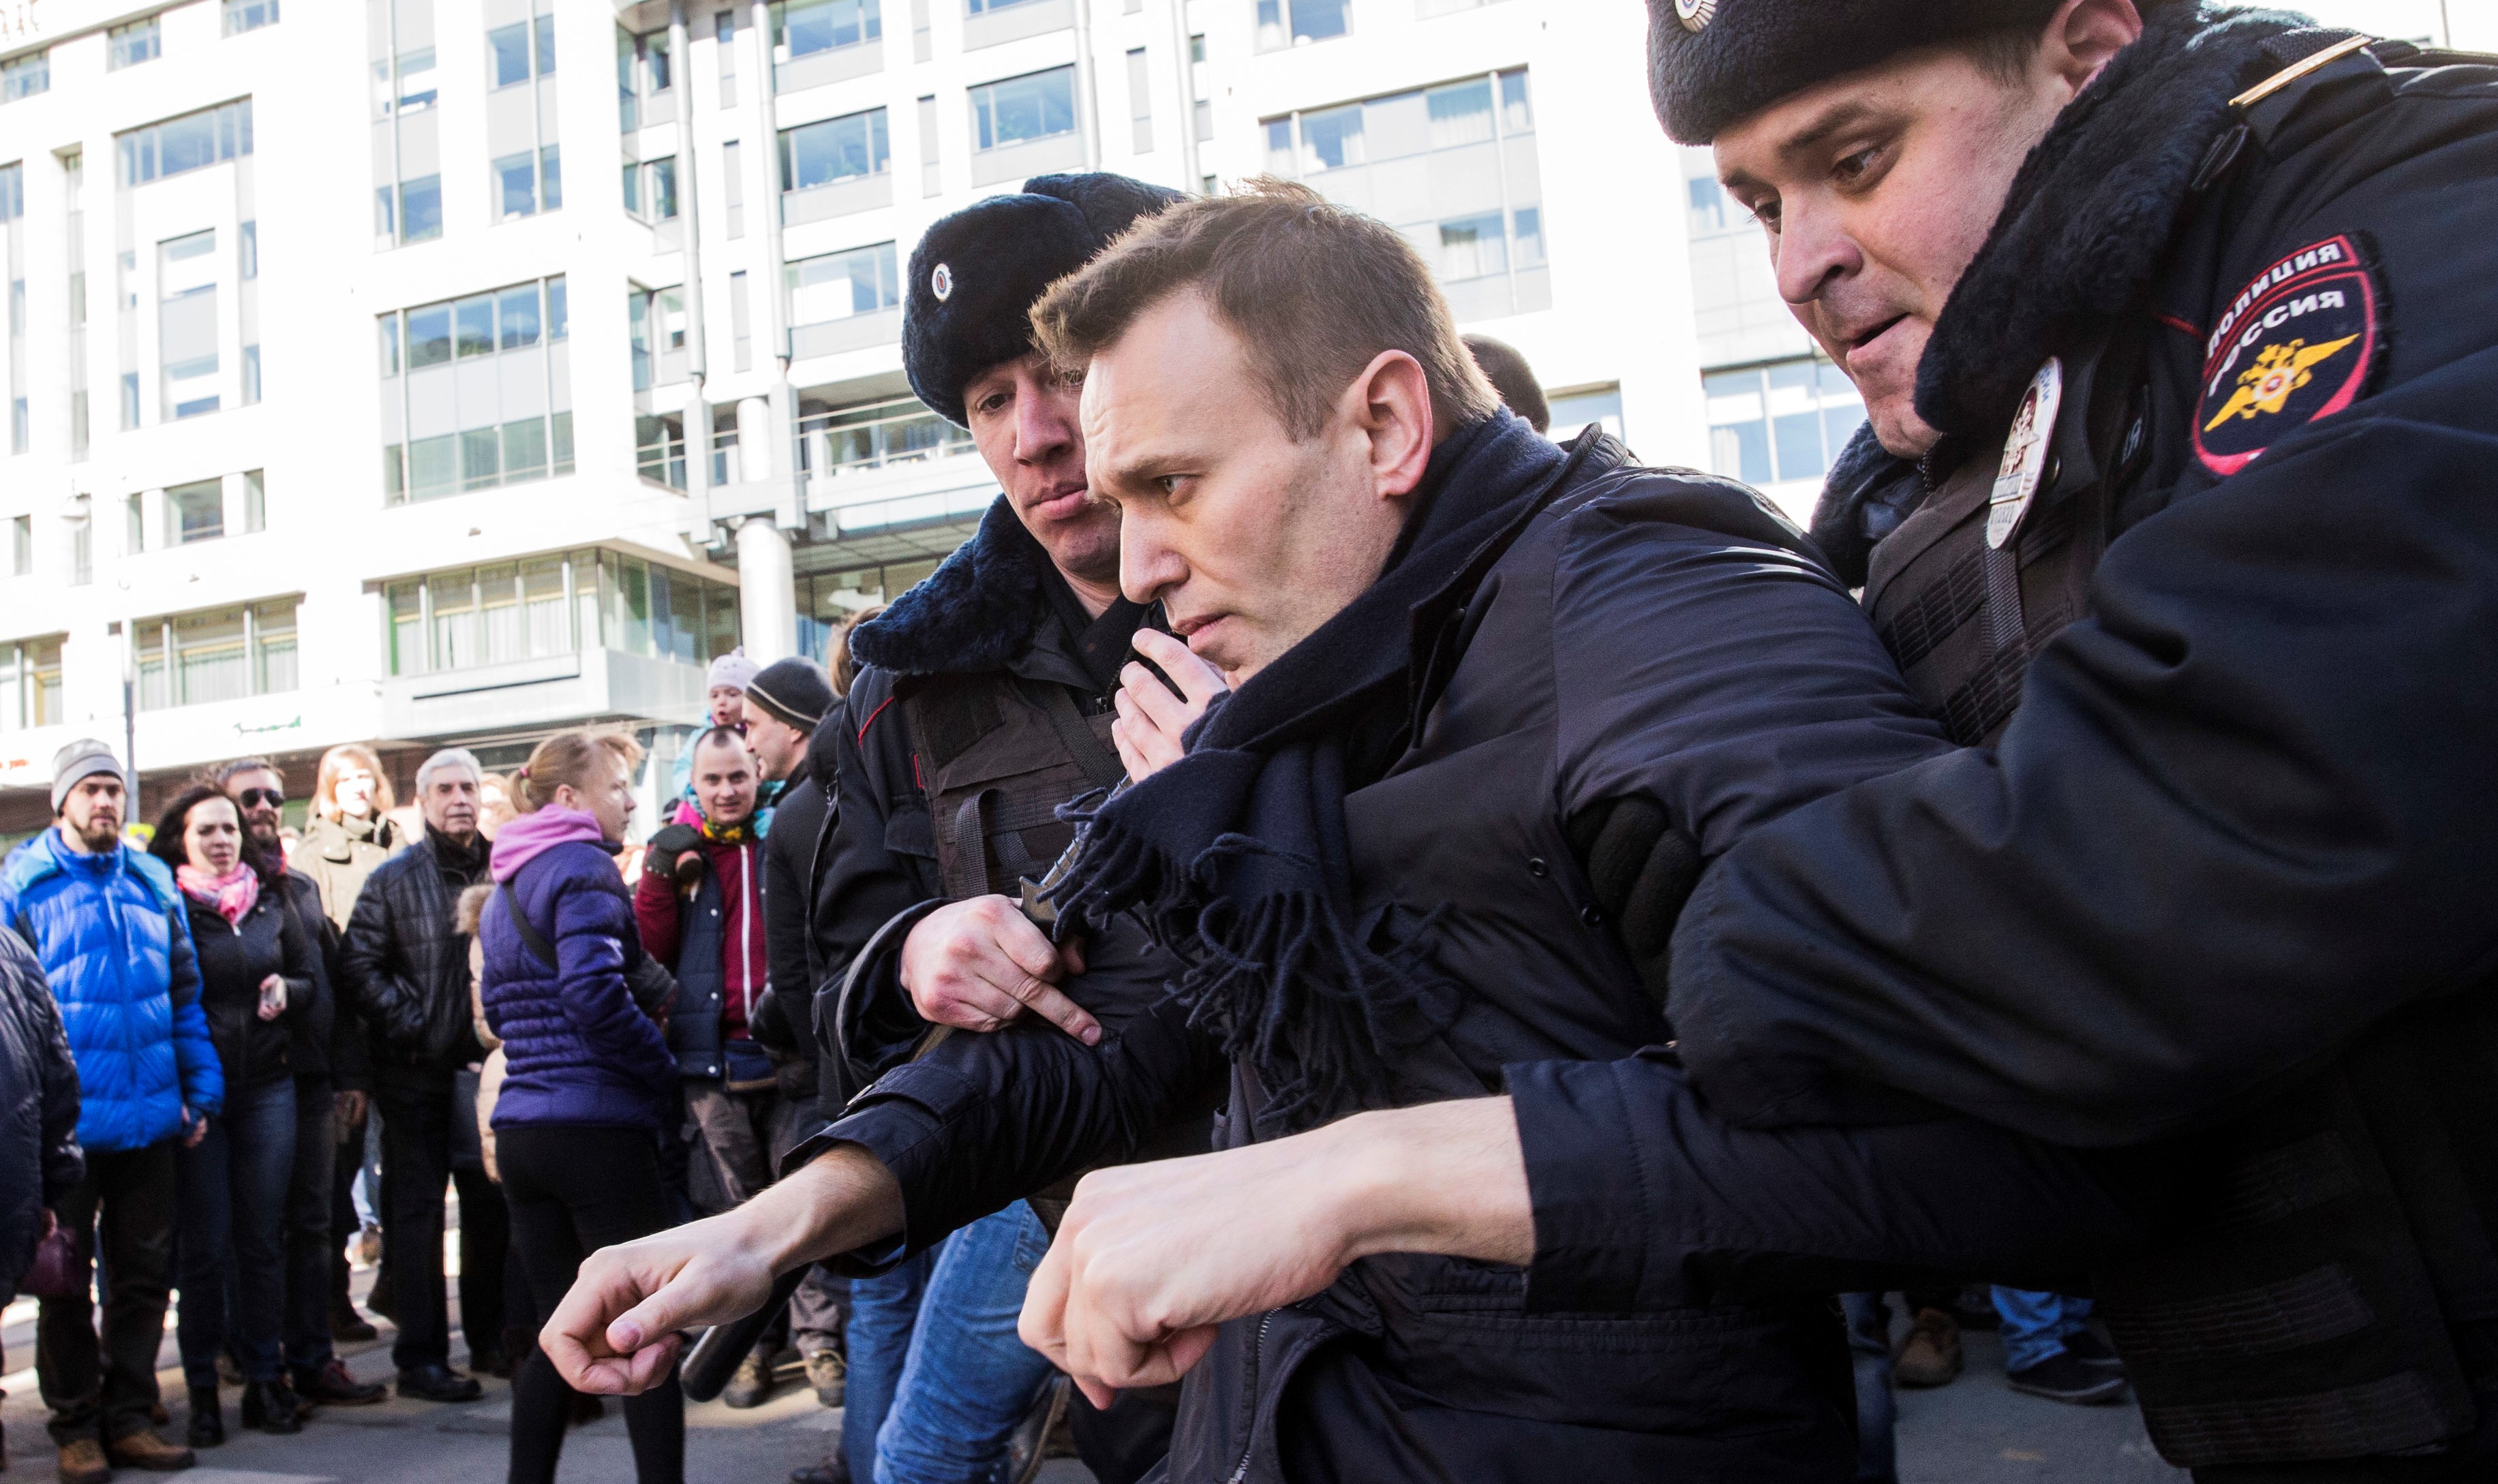 В чем обвиняли навального